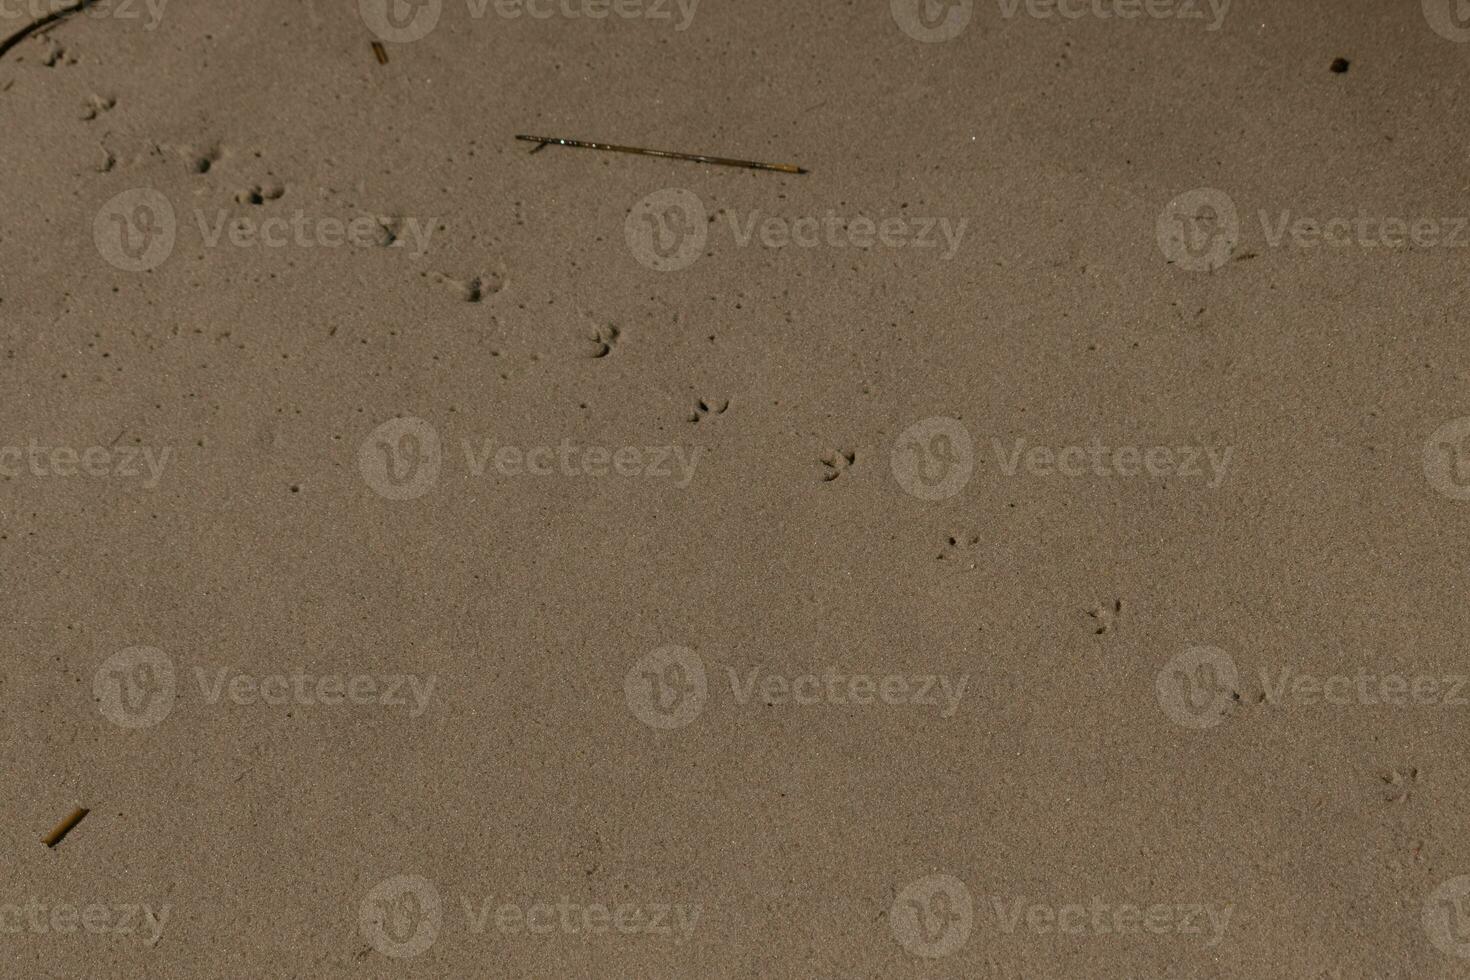 yo amado estos pistas de huellas en el arena. estos son el pasos ese un aves playeras tomó a través de el playa. su pequeño pies haciendo un camino en el arena a espectáculo el dirección ellos son yendo. foto